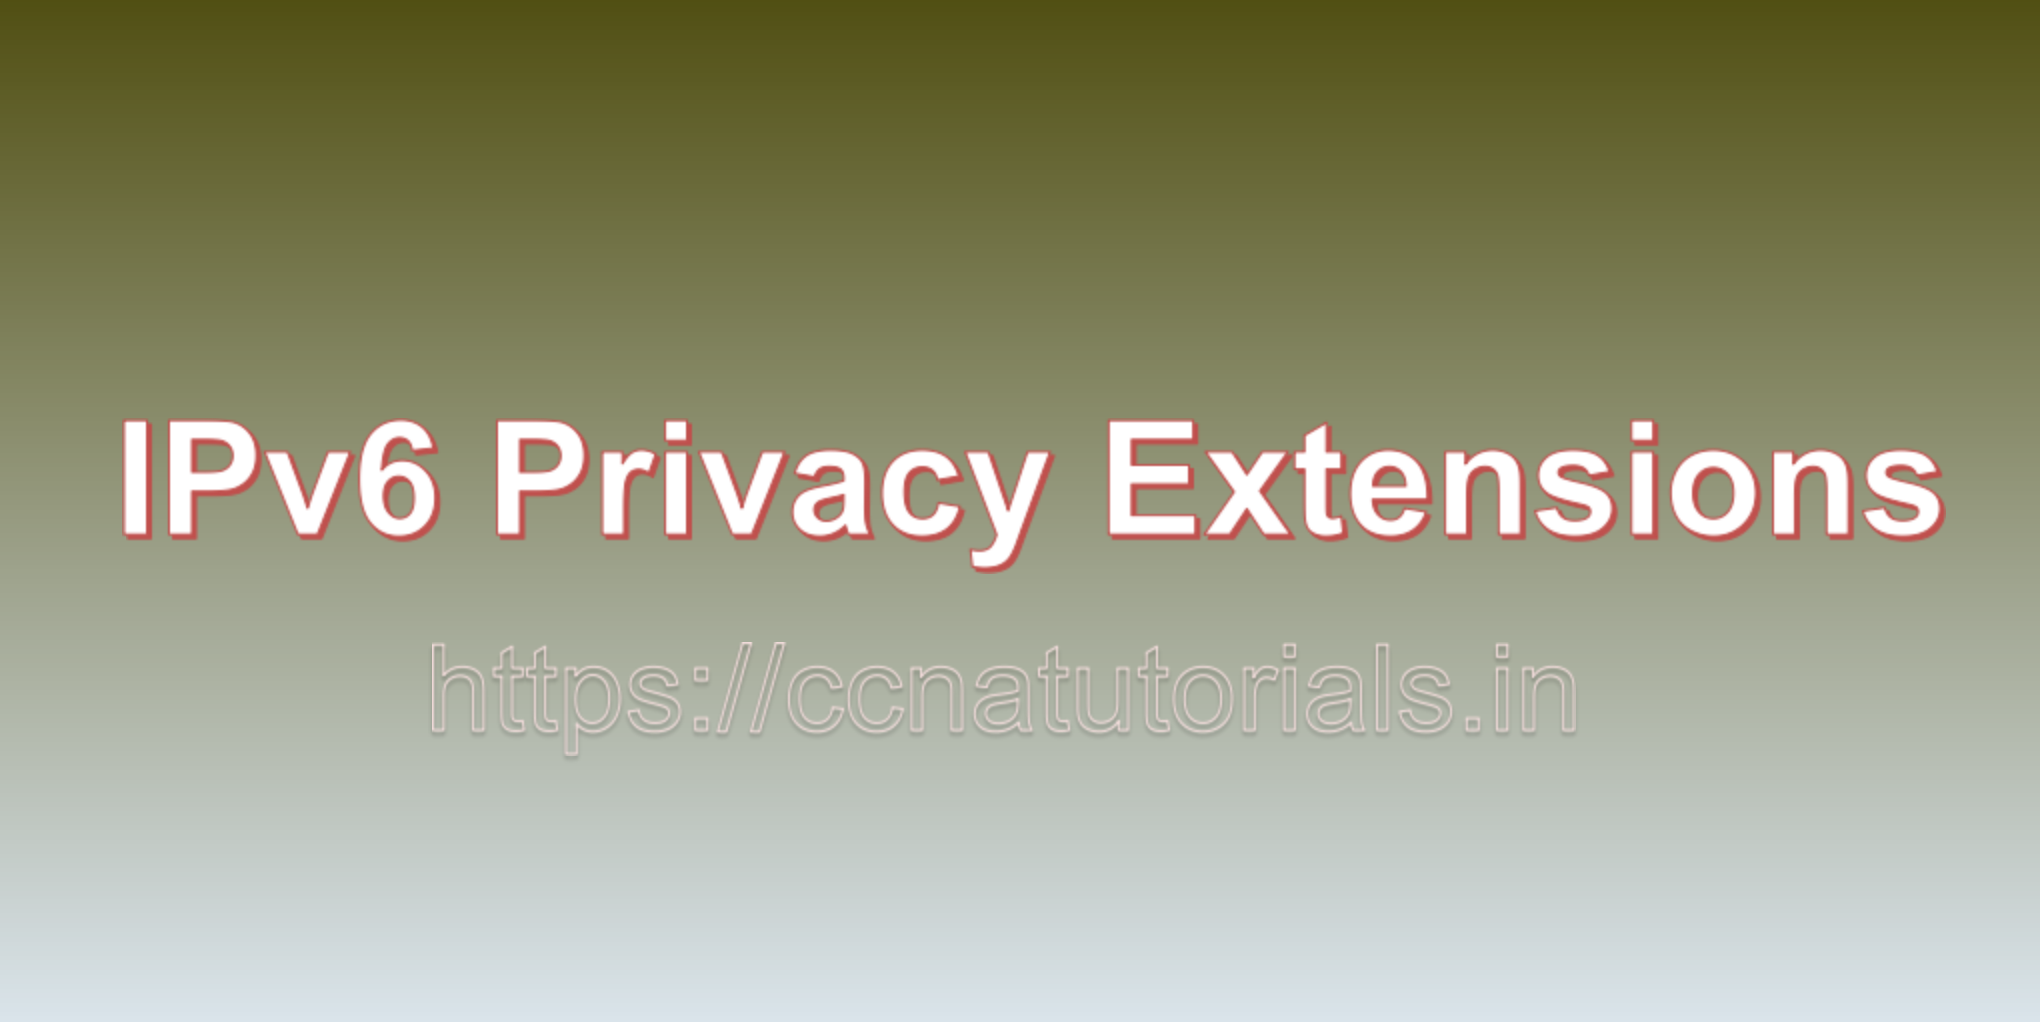 IPv6 Privacy Extensions, ccna, ccna tutorials